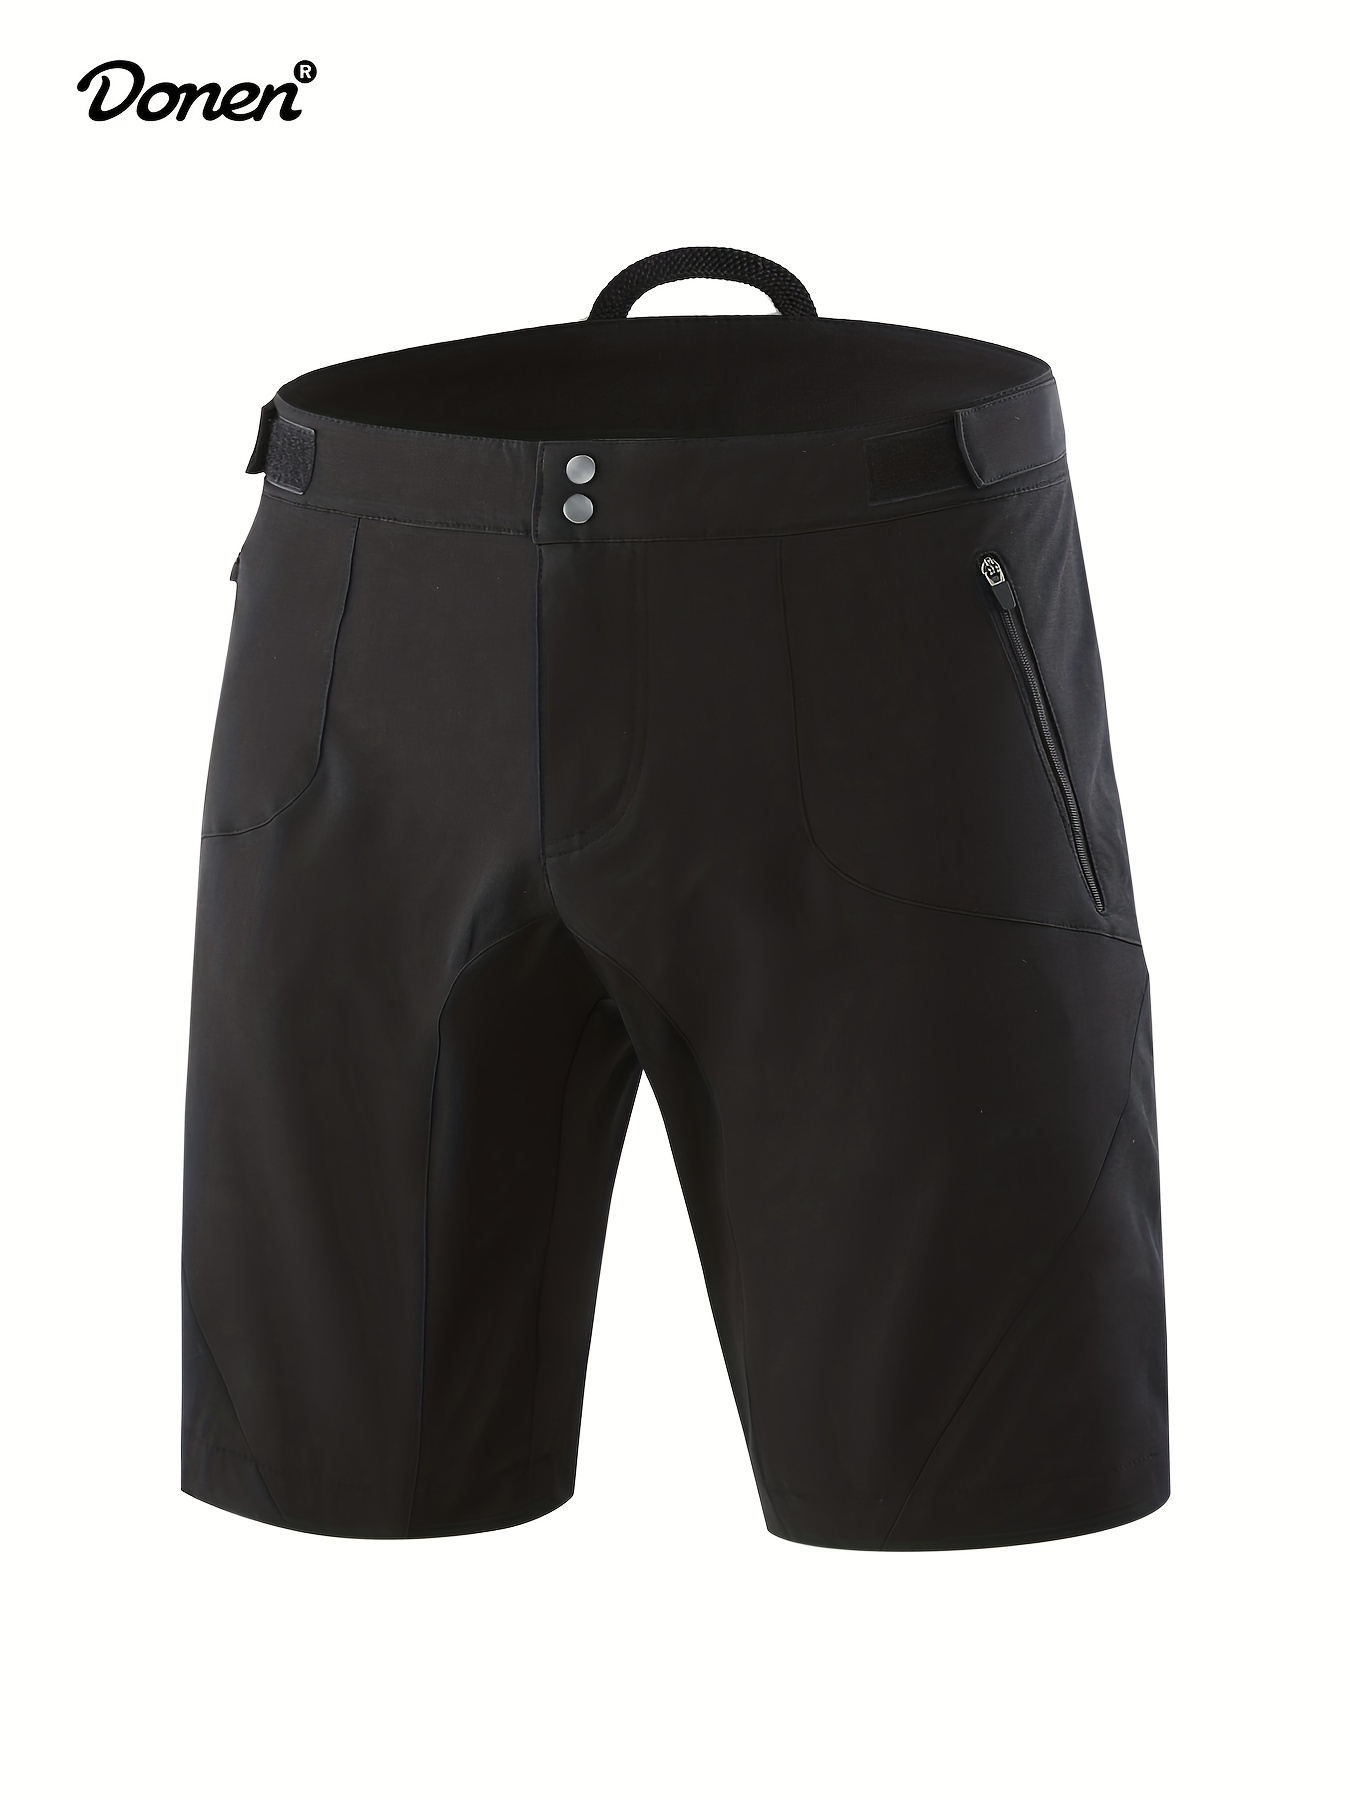 Pantalones cortos de ciclismo con almohadillas transpirables 5D